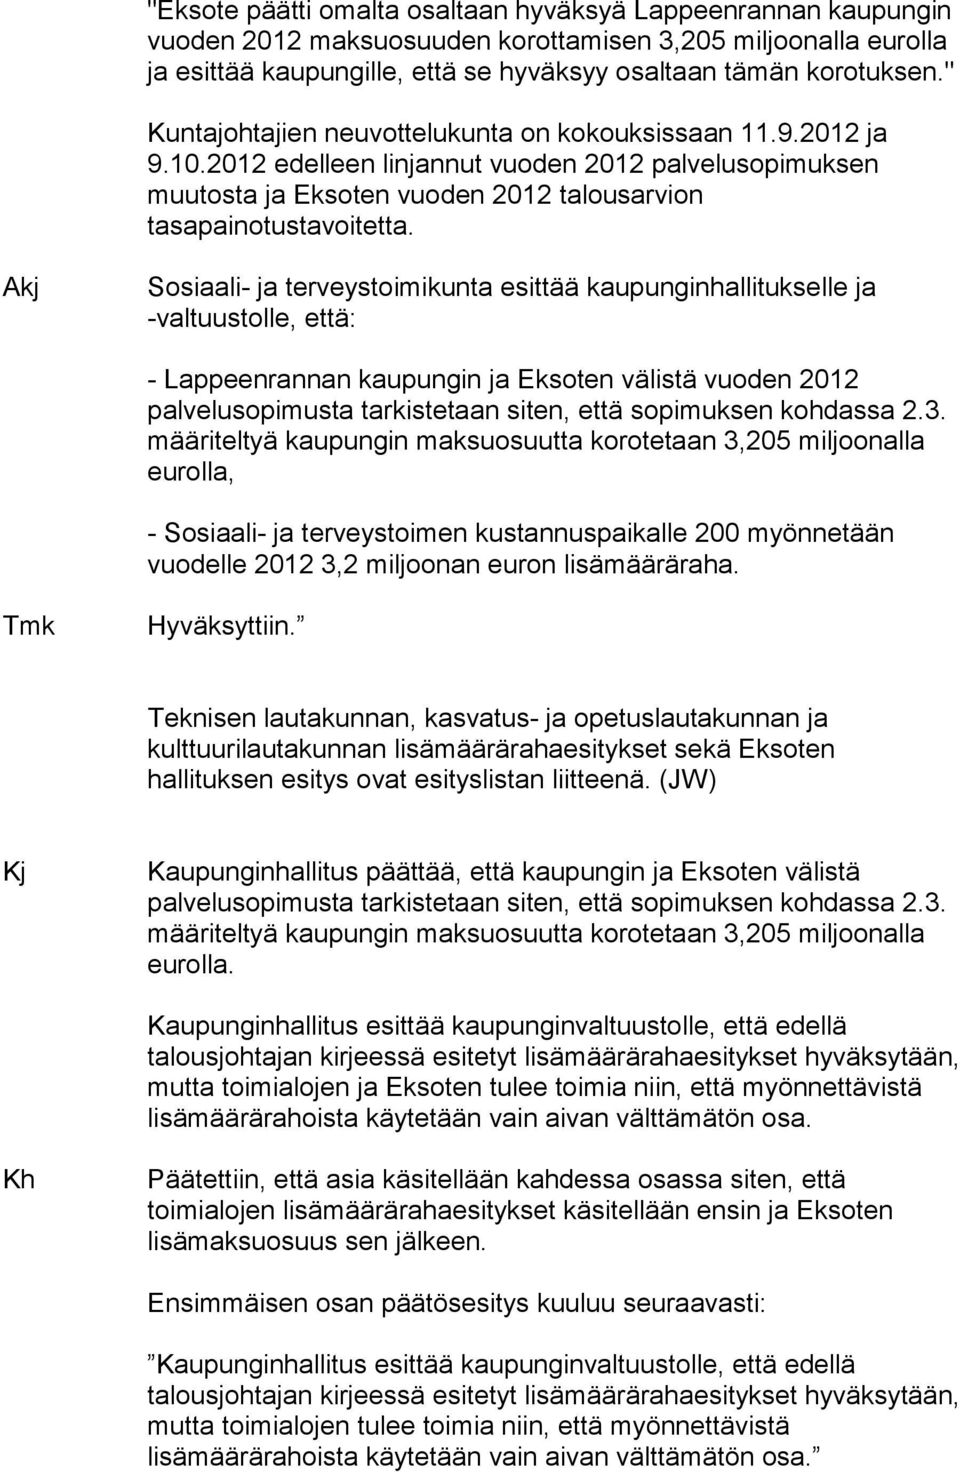 Akj Sosiaali- ja terveystoimikunta esittää kaupunginhallitukselle ja -valtuustolle, että: - Lappeenrannan kaupungin ja Eksoten välistä vuoden 2012 palvelusopimusta tarkistetaan siten, että sopimuksen